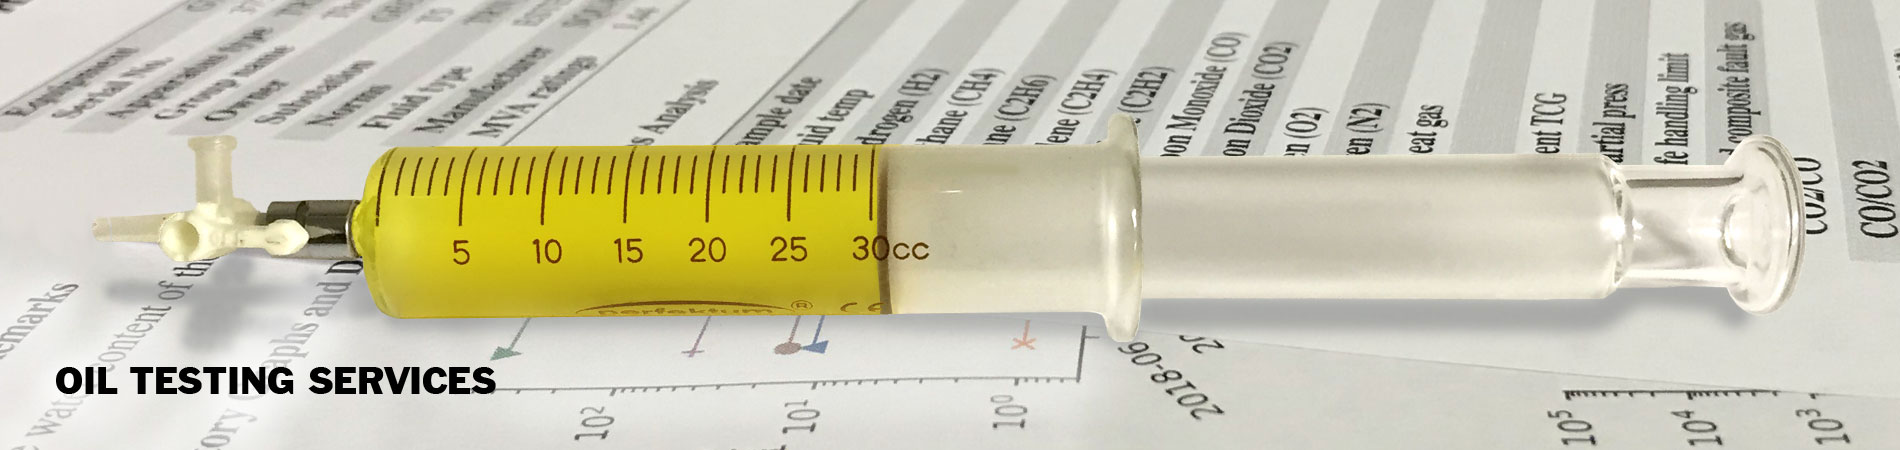 Oil Sampling Syringe Oil Tests Dissolved Gas